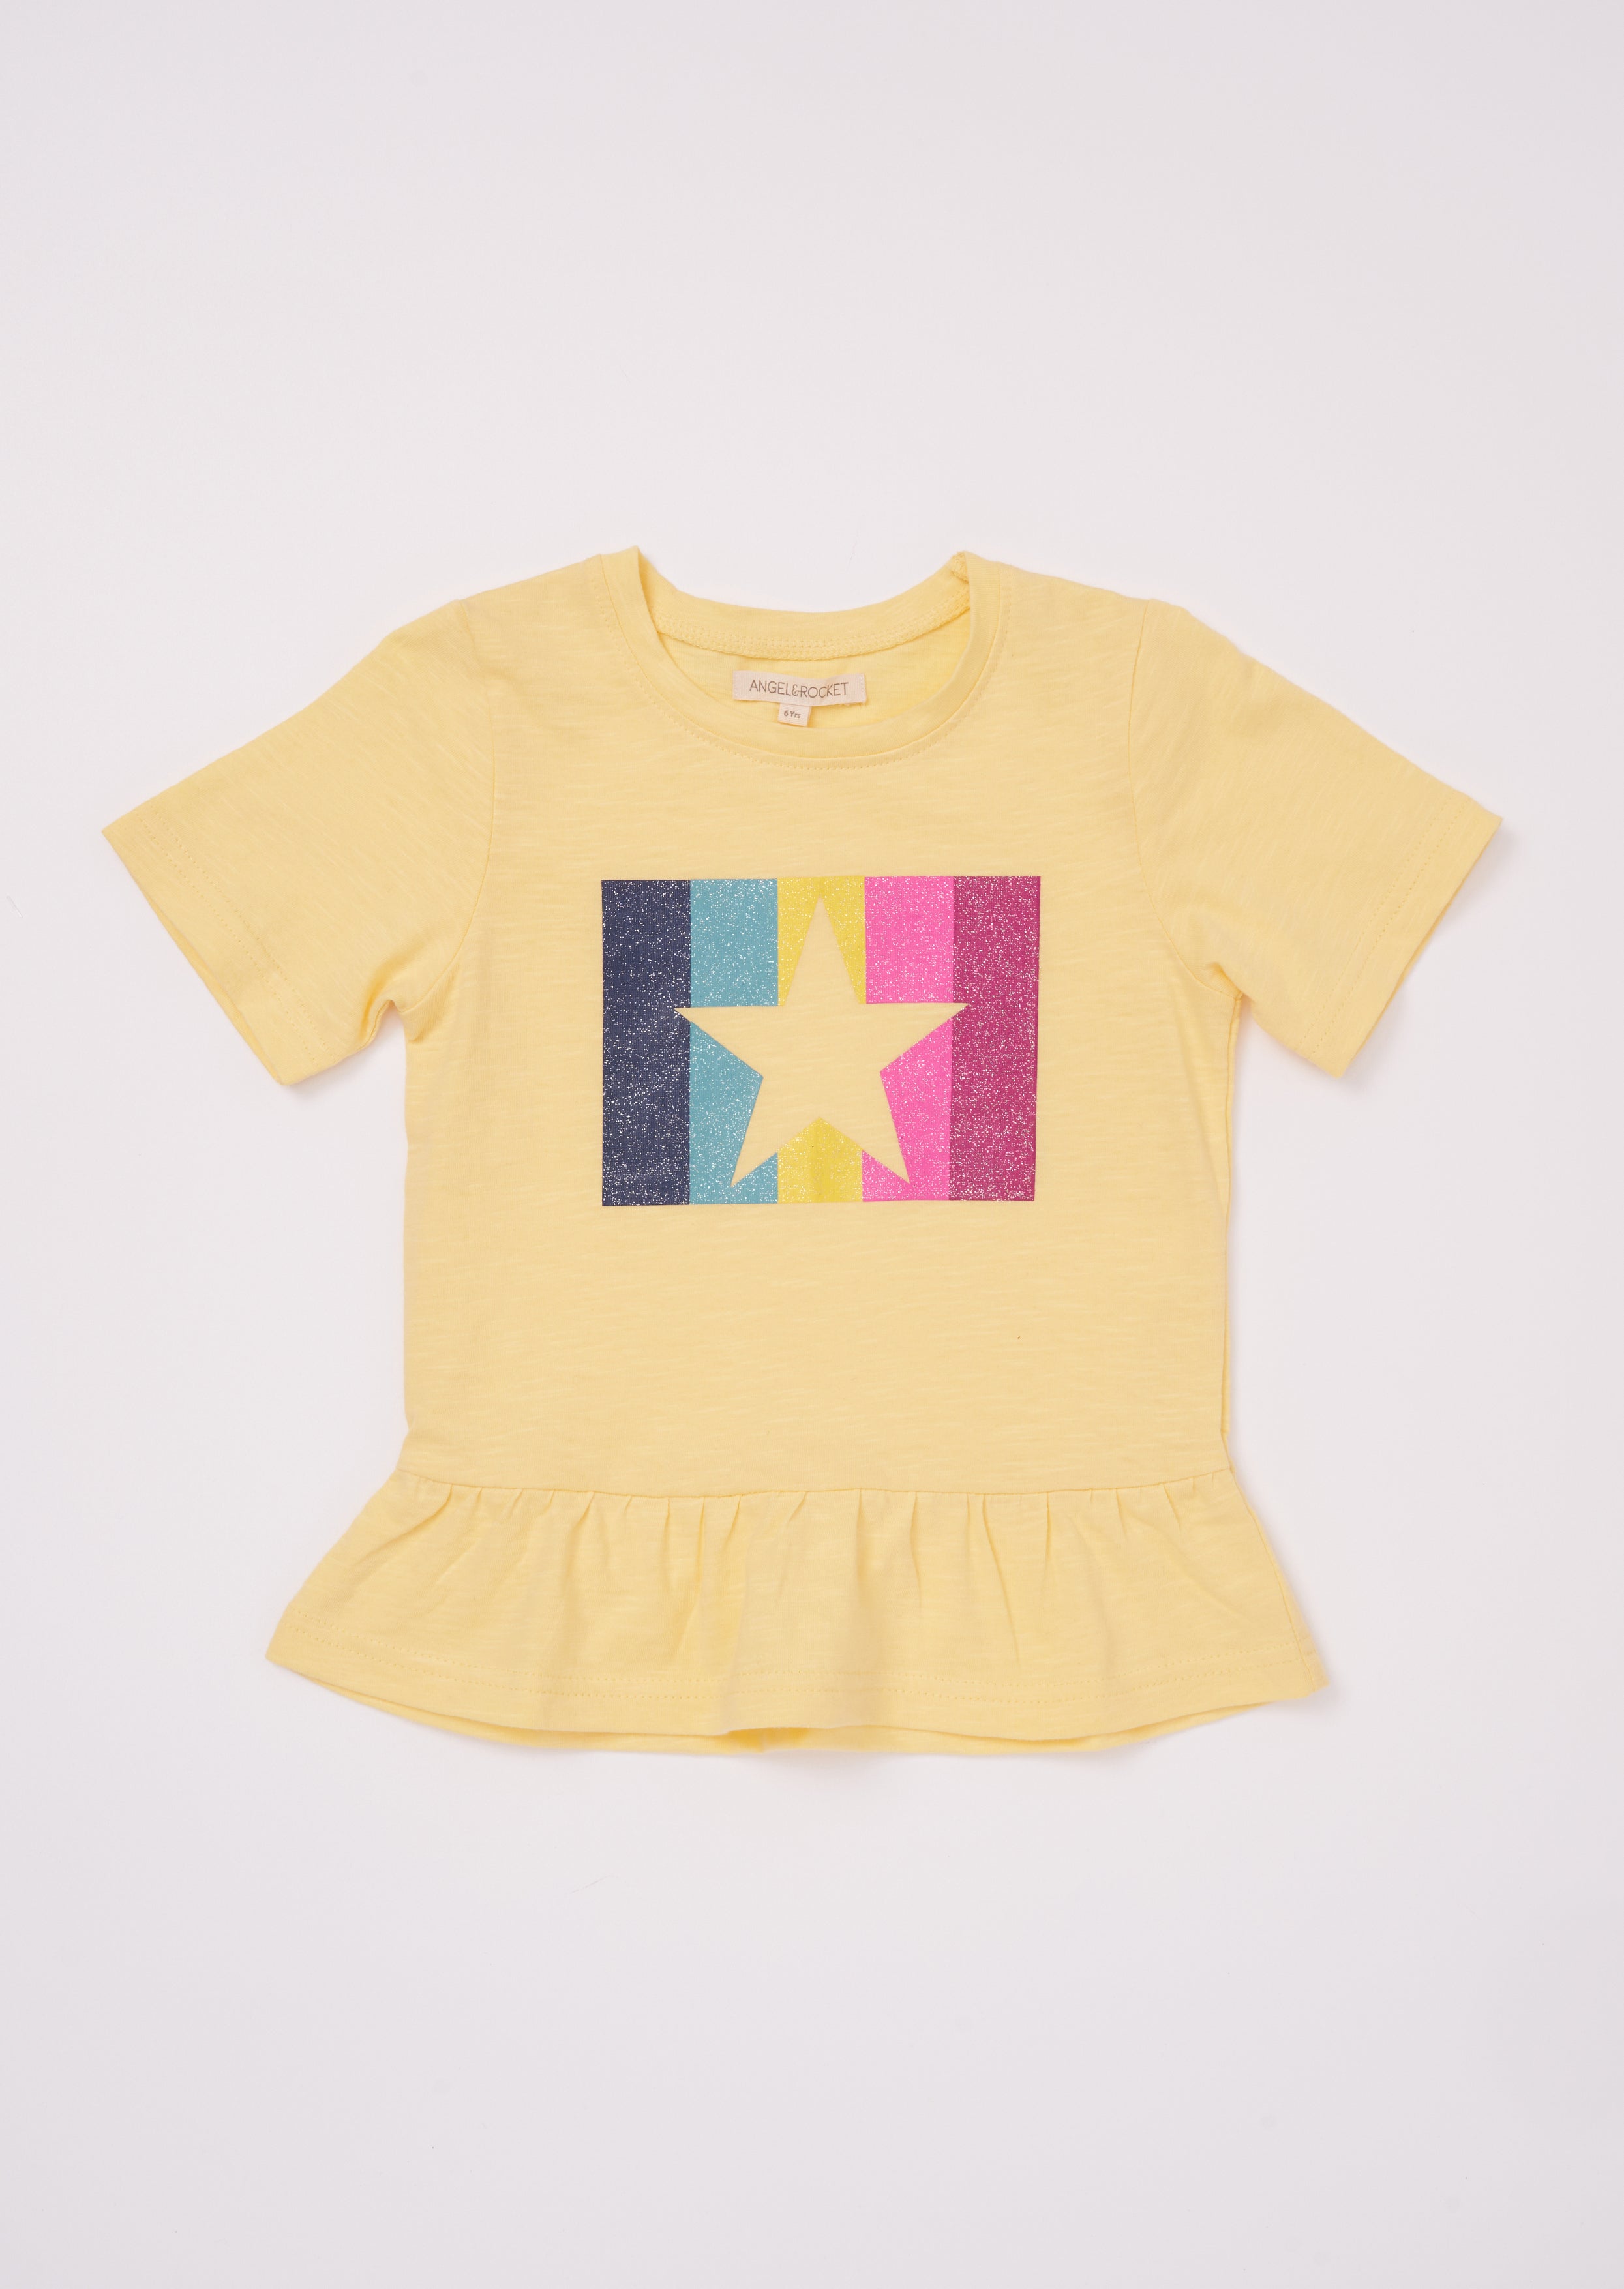 Girls Star Printed Yellow T-Shirt